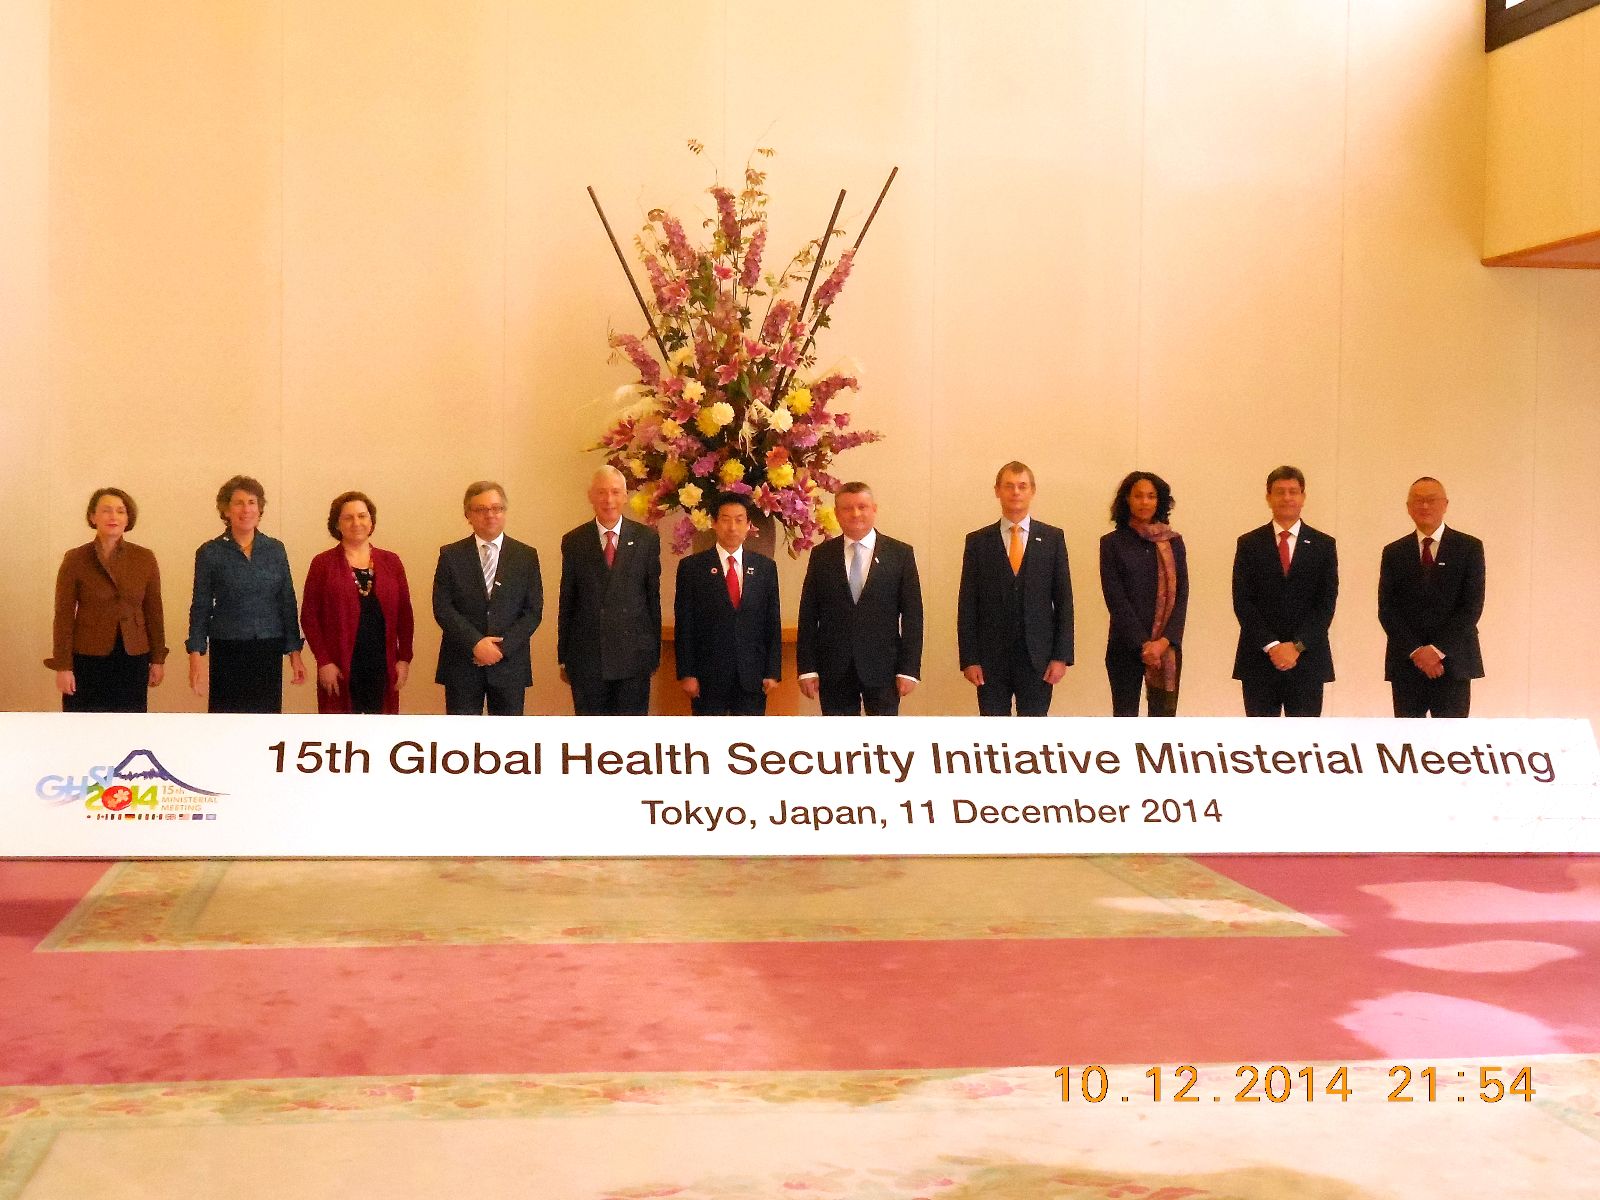 Funcionarios de la 15 Reunión Ministerial de la Iniciativa Global para la Seguridad en Salud